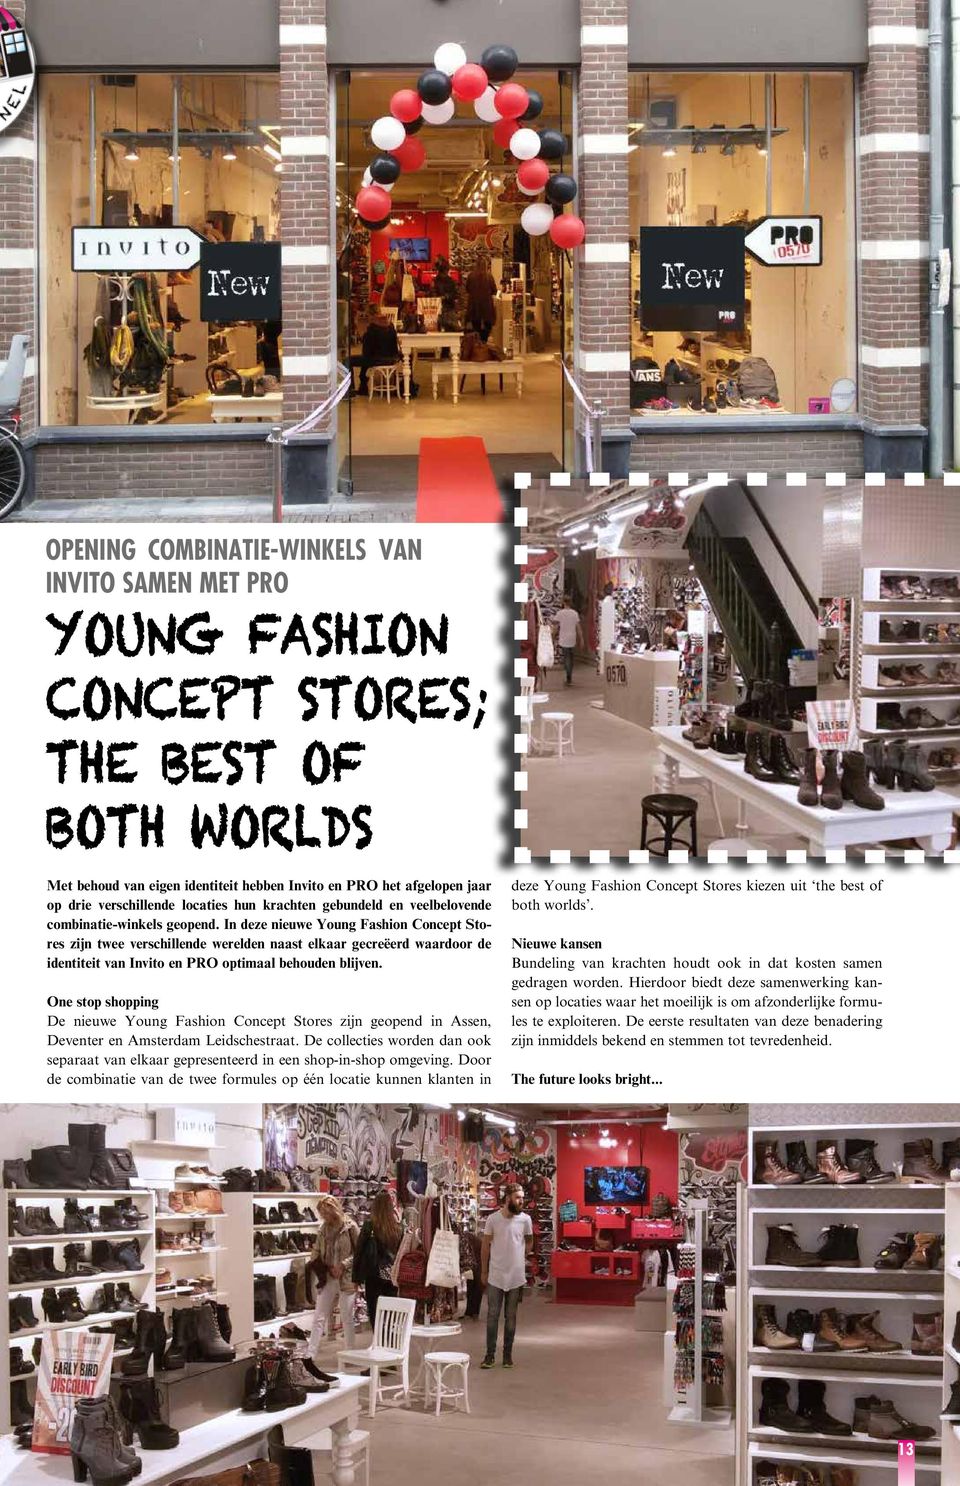 In deze nieuwe Young Fashion Concept Stores zijn twee verschillende werelden naast elkaar gecreëerd waardoor de identiteit van Invito en PRO optimaal behouden blijven.